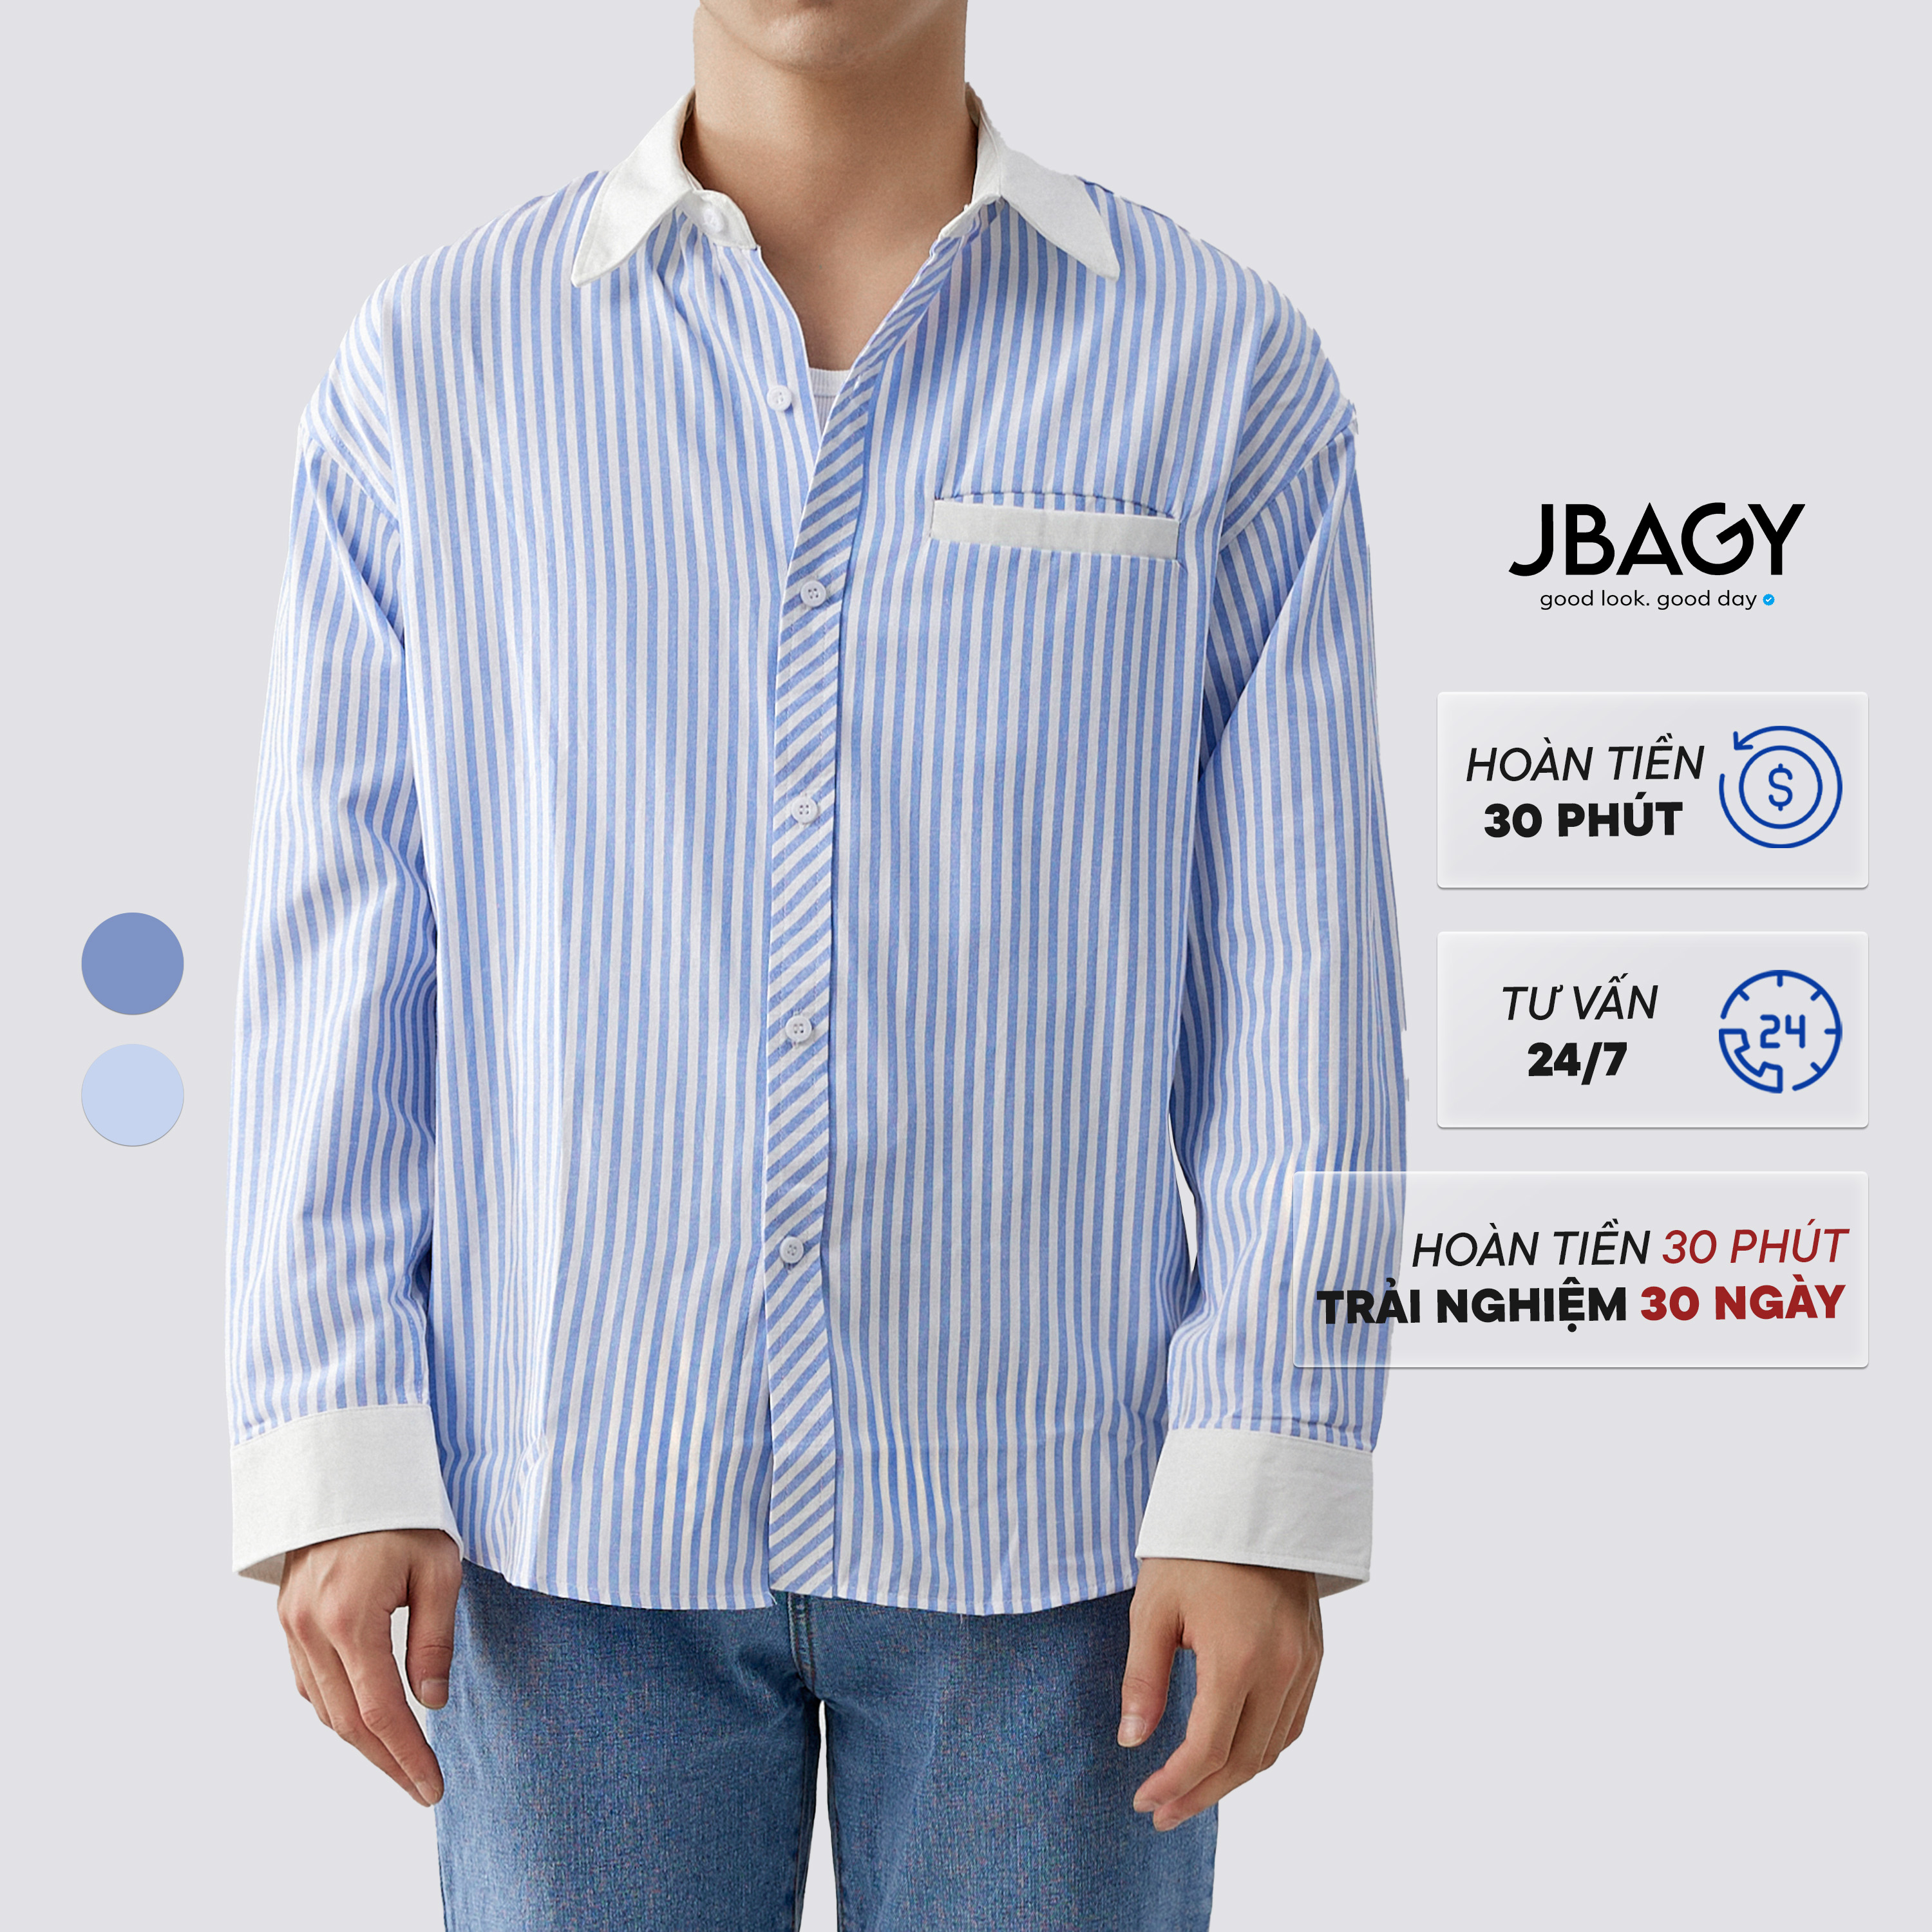 Áo sơ mi kẻ sọc JBAGY tay dài nam nữ dáng rộng phối màu vải cotton thô thoáng mát Shinee thương hiệu JBAGY - JS0702